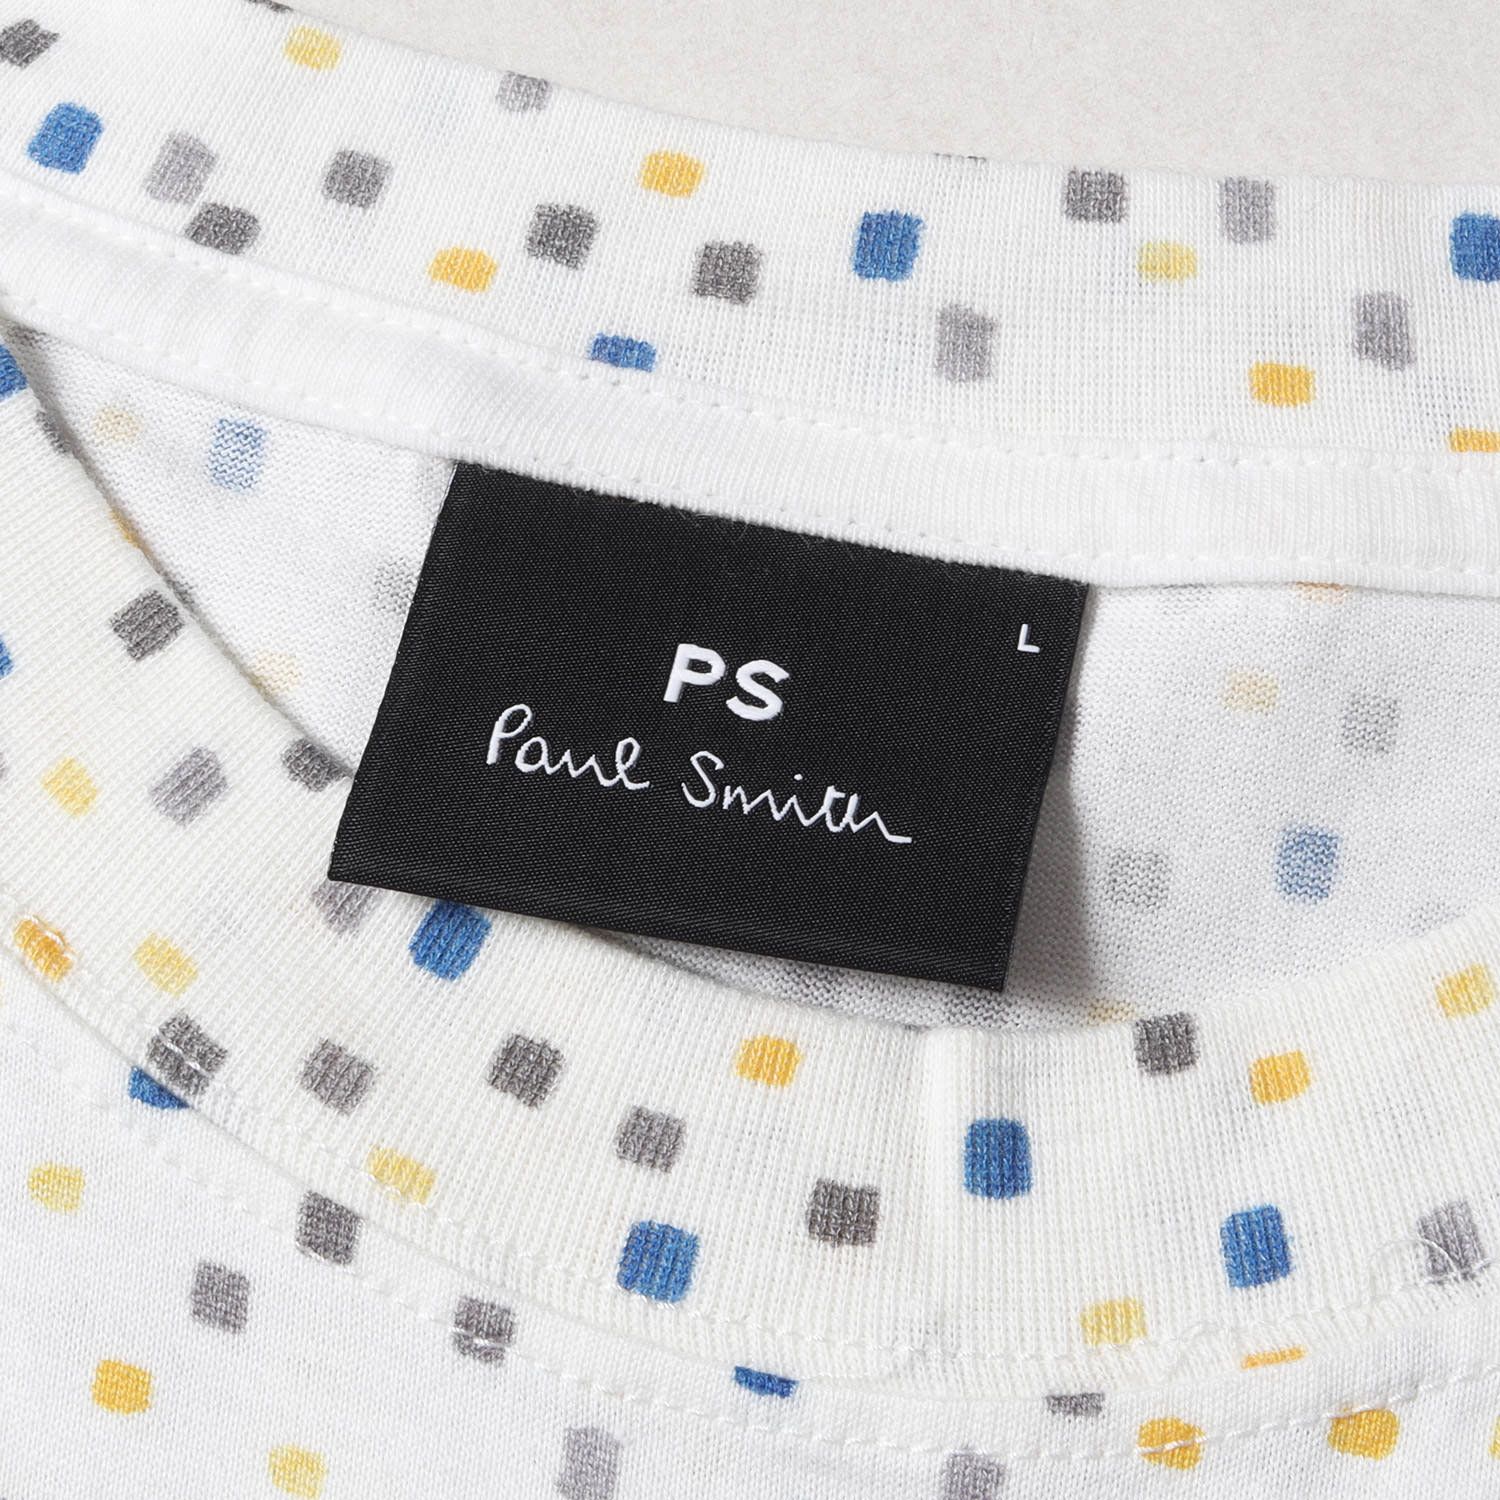 Paul Smith ポールスミス Tシャツ サイズ:L マルチカラー ブロック プリント 182508 011R 総柄 クルーネック PS ホワイト  トップス カットソー カジュアル 日本製